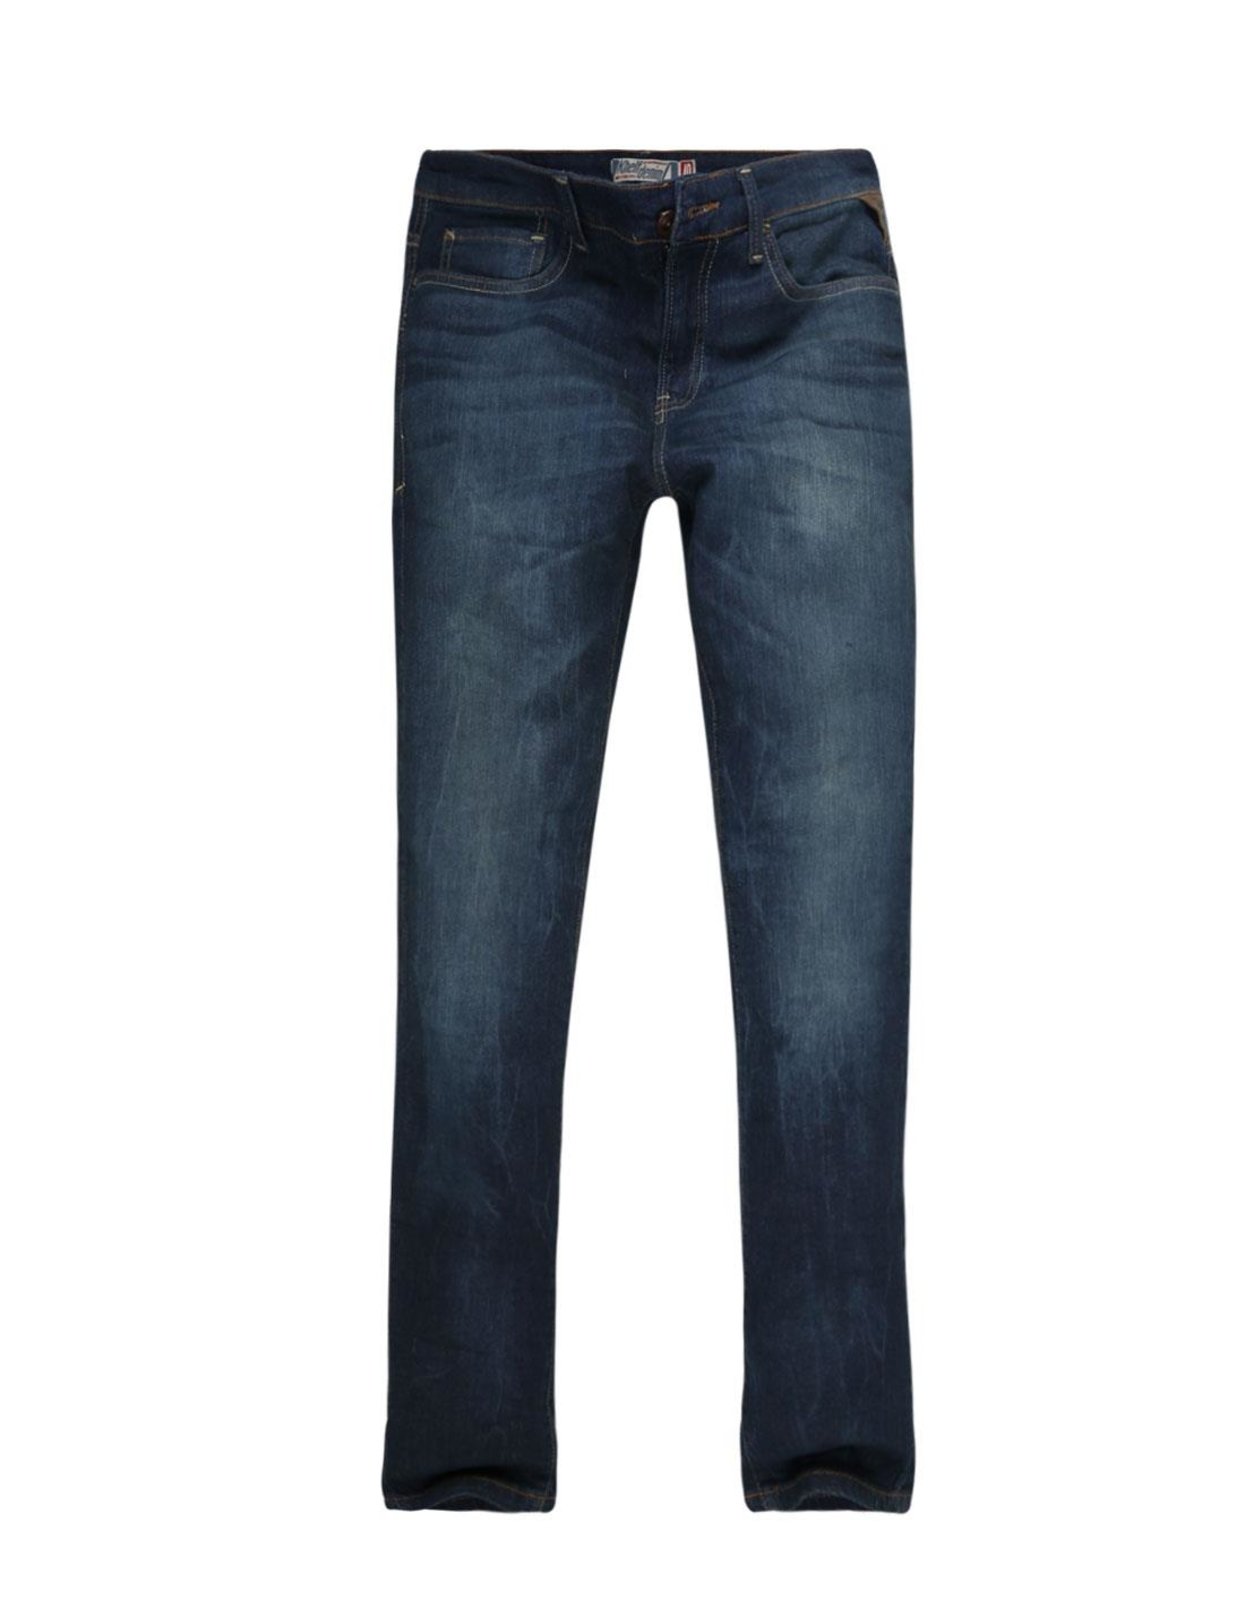 calca jeans masculina dafiti